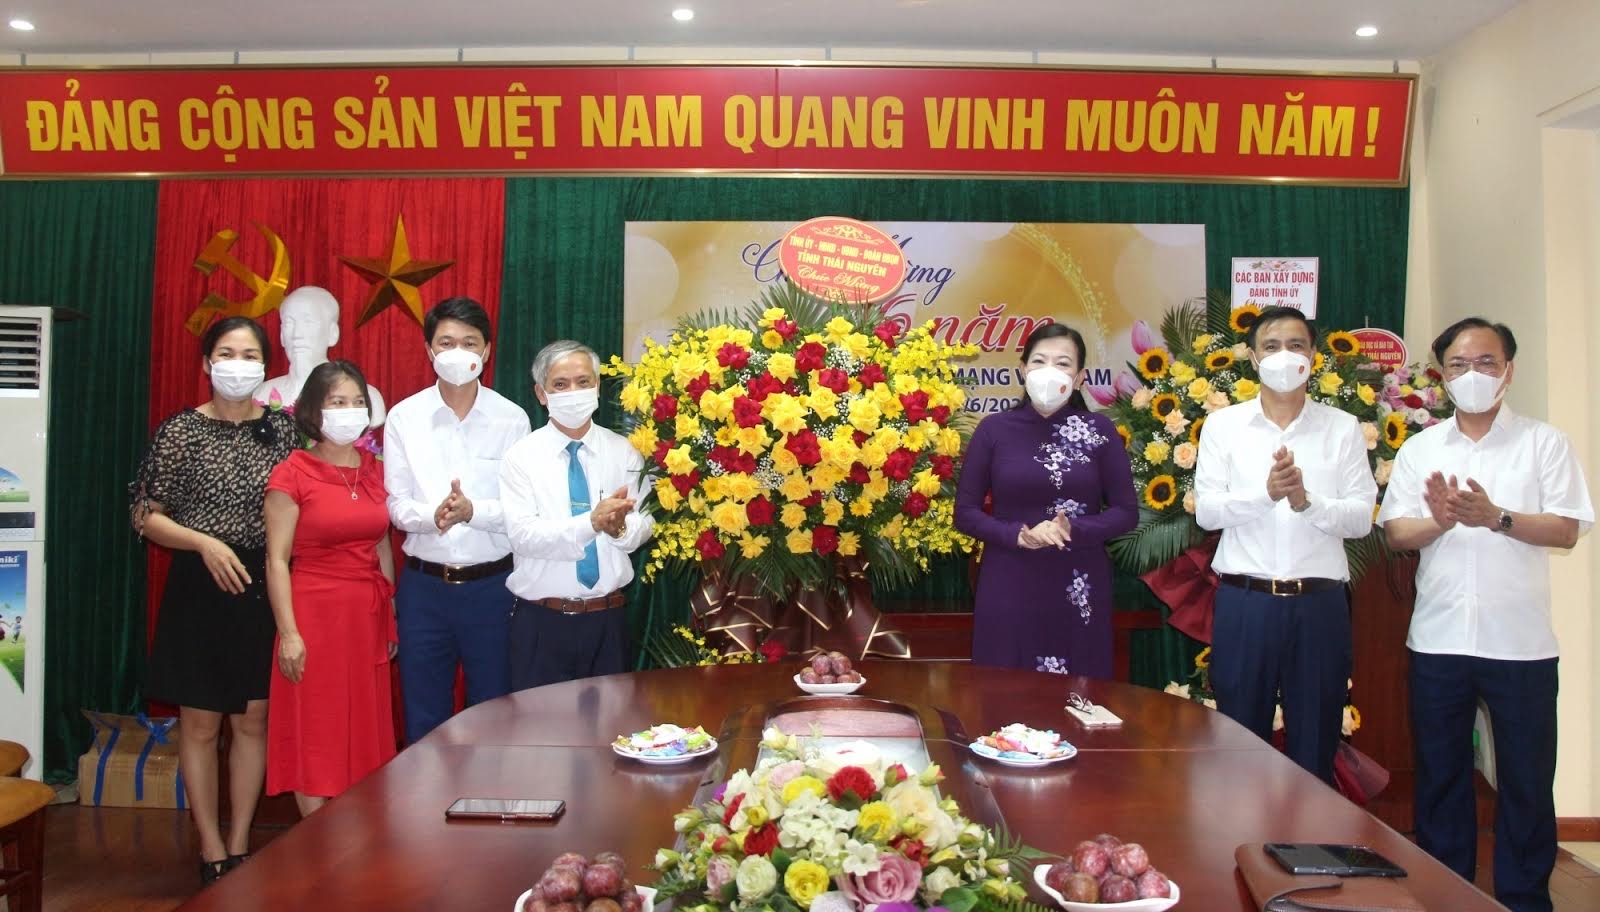 Đồng chí Nguyễn Thanh Hải, Uỷ viên Trung ương Đảng, Bí thư tỉnh ủy thăm chúc mừng Hội Nhà báo tỉnh nhân dịp kỷ niệm 96 năm ngày Báo chí Cách mạng Việt Nam 21/6/2021 (1925 – 2021)